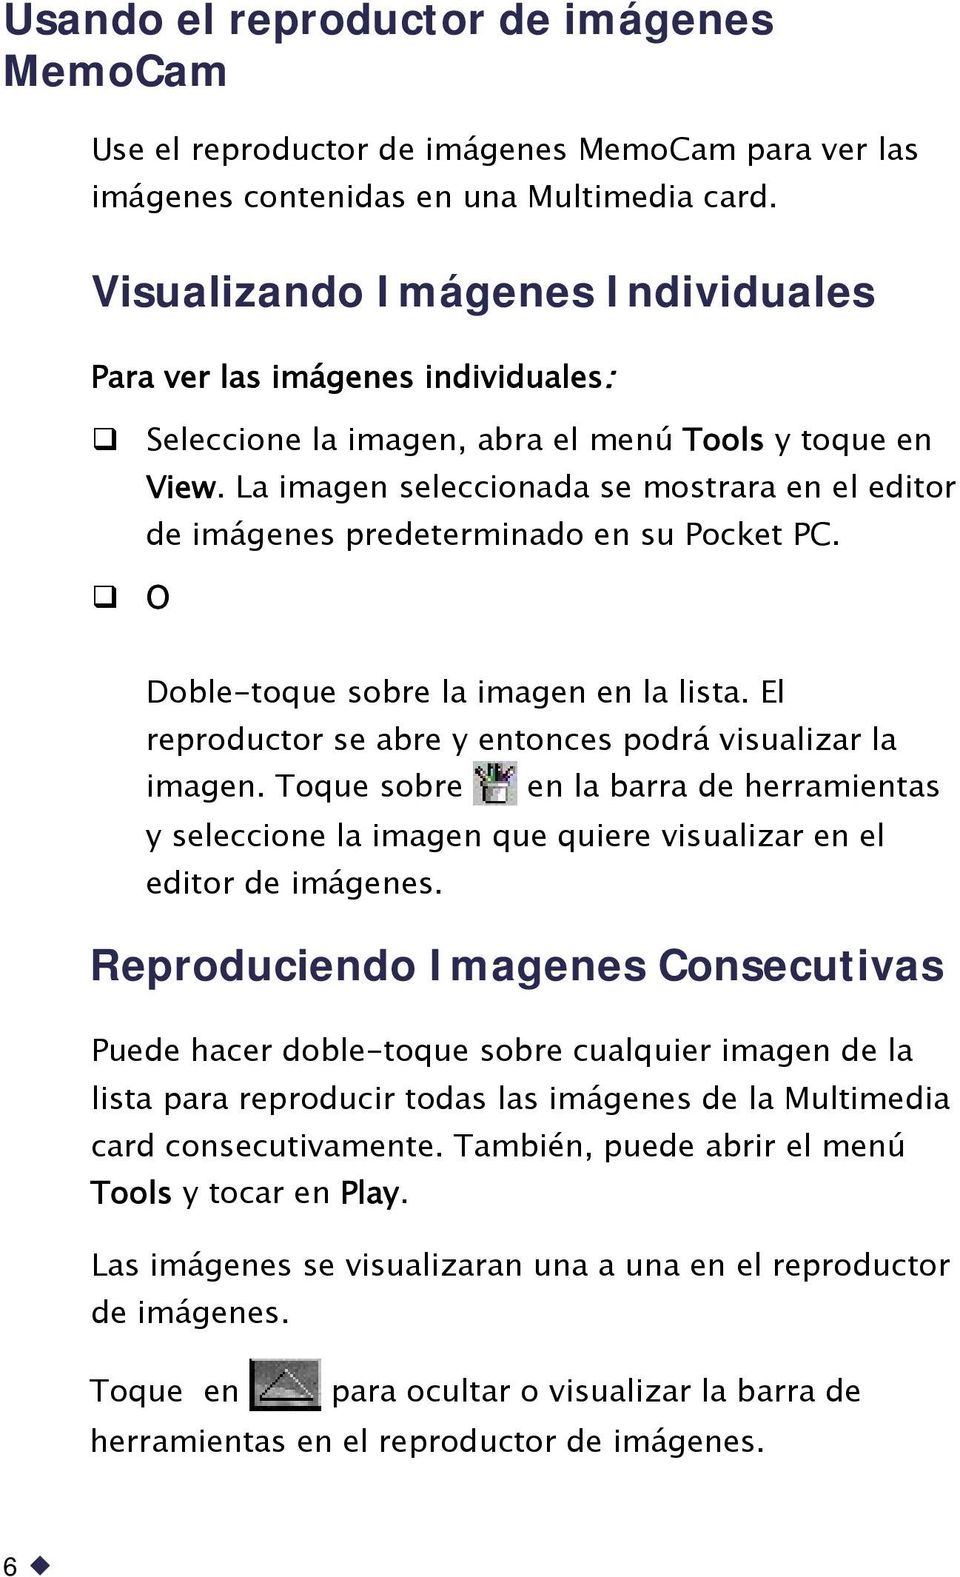 La imagen seleccionada se mostrara en el editor de imágenes predeterminado en su Pocket PC. O Doble-toque sobre la imagen en la lista. El reproductor se abre y entonces podrá visualizar la imagen.